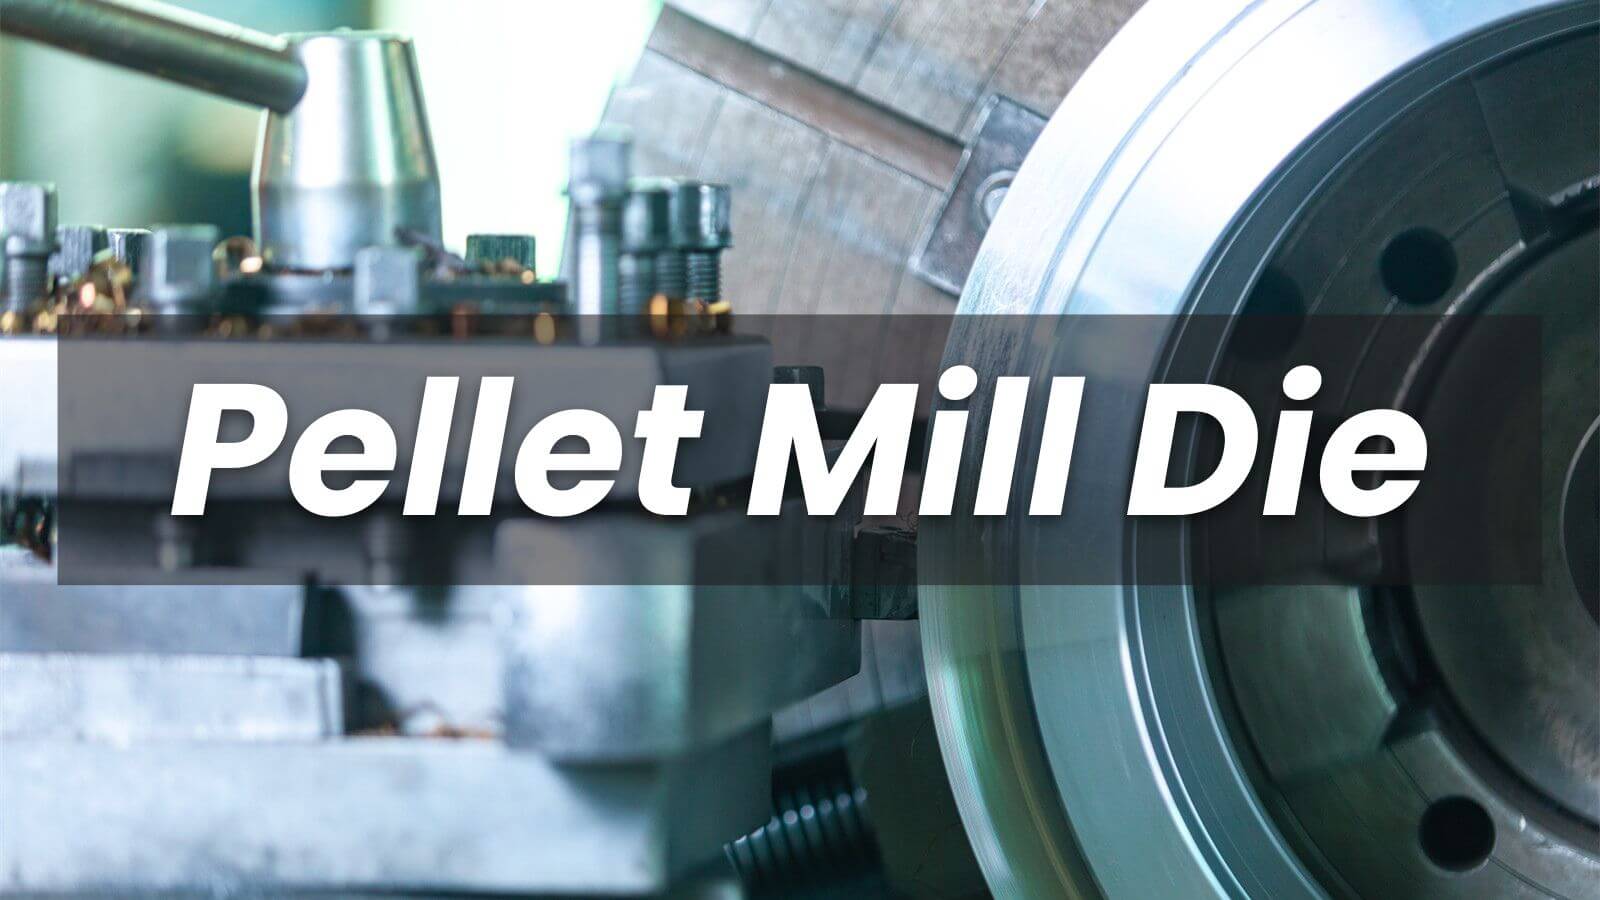 Pellet Mill Die in India